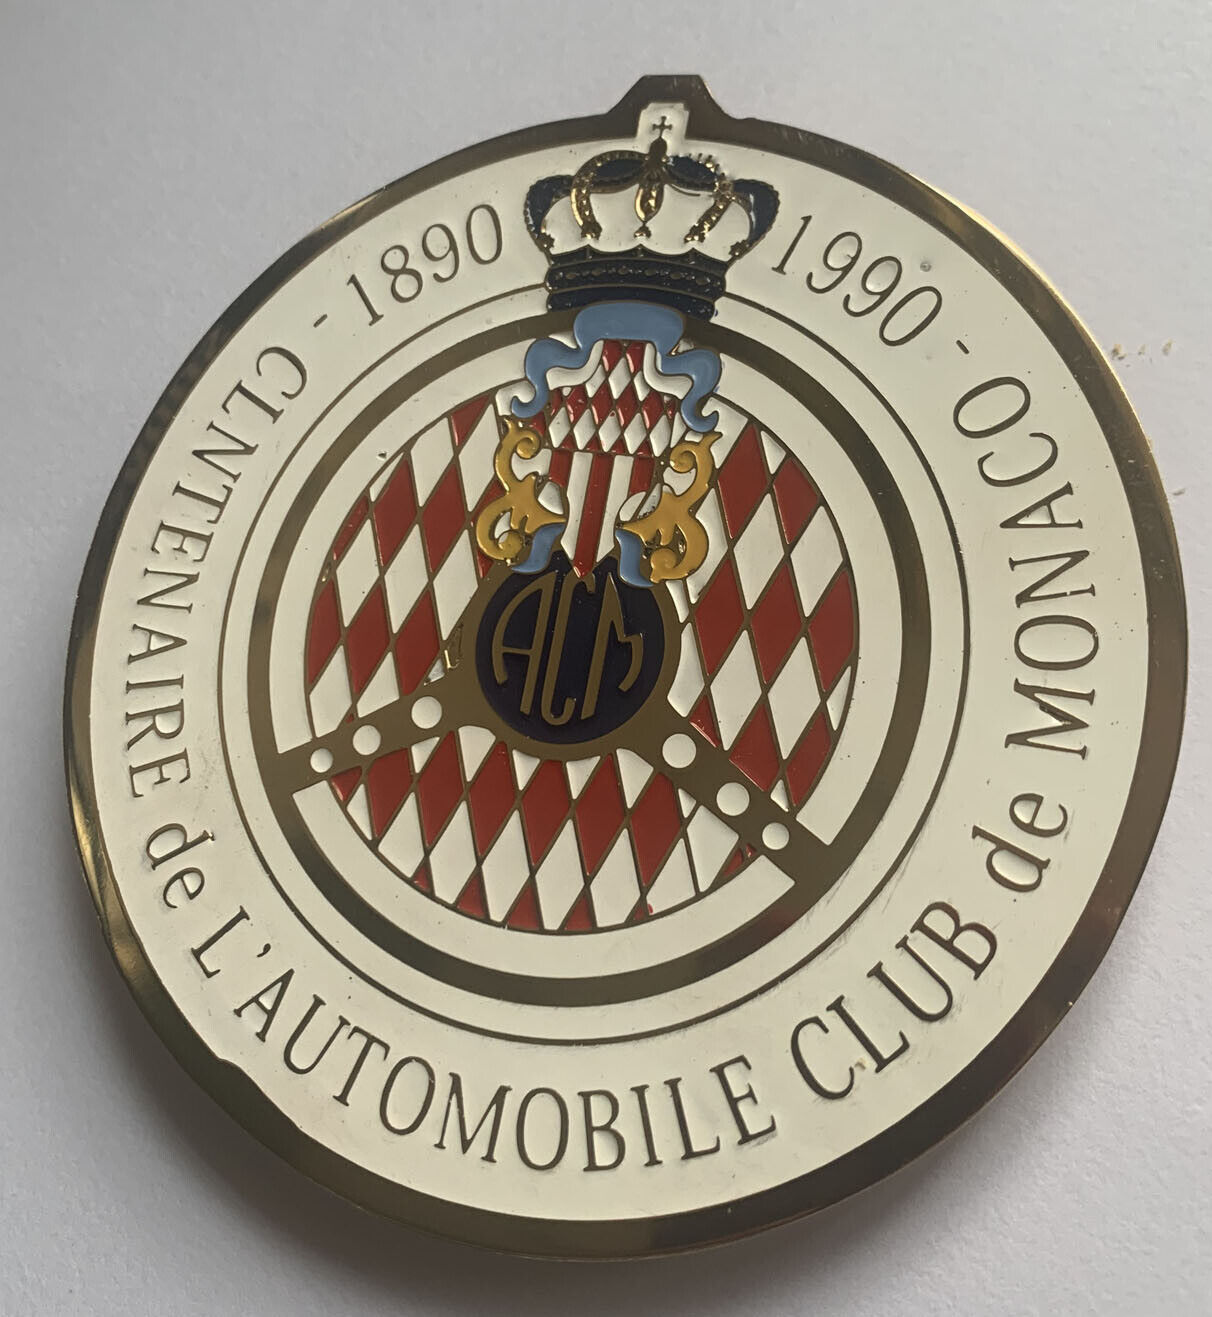 Automobile club De Monaco 1890-190 car grill badge mg jaguar triumph audi vw